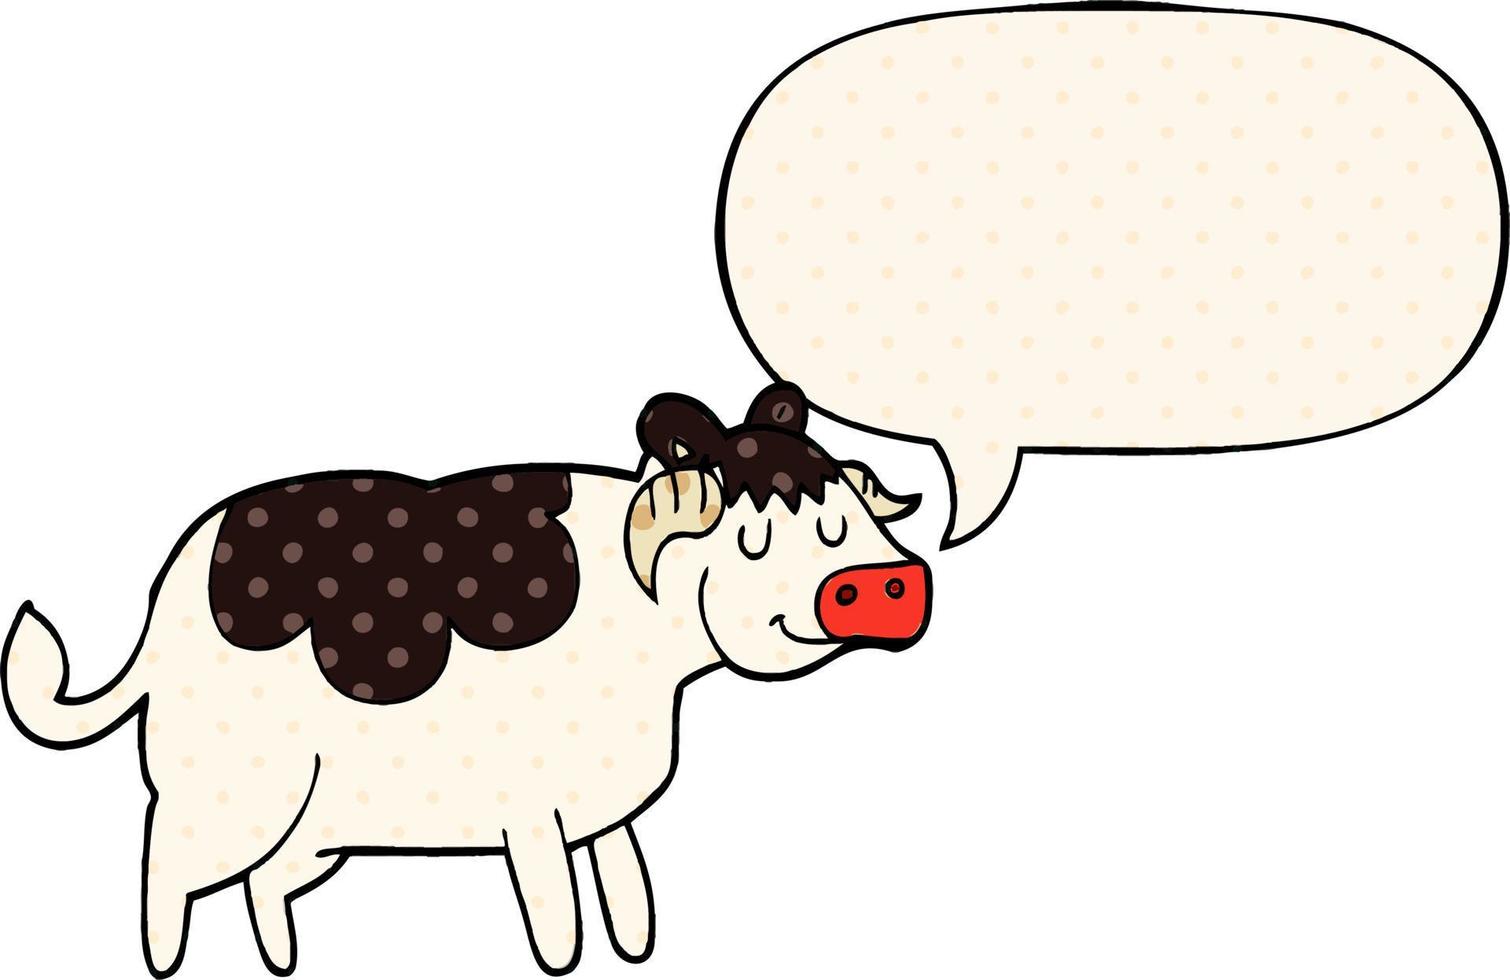 Cartoon-Kuh und Sprechblase im Comic-Stil vektor